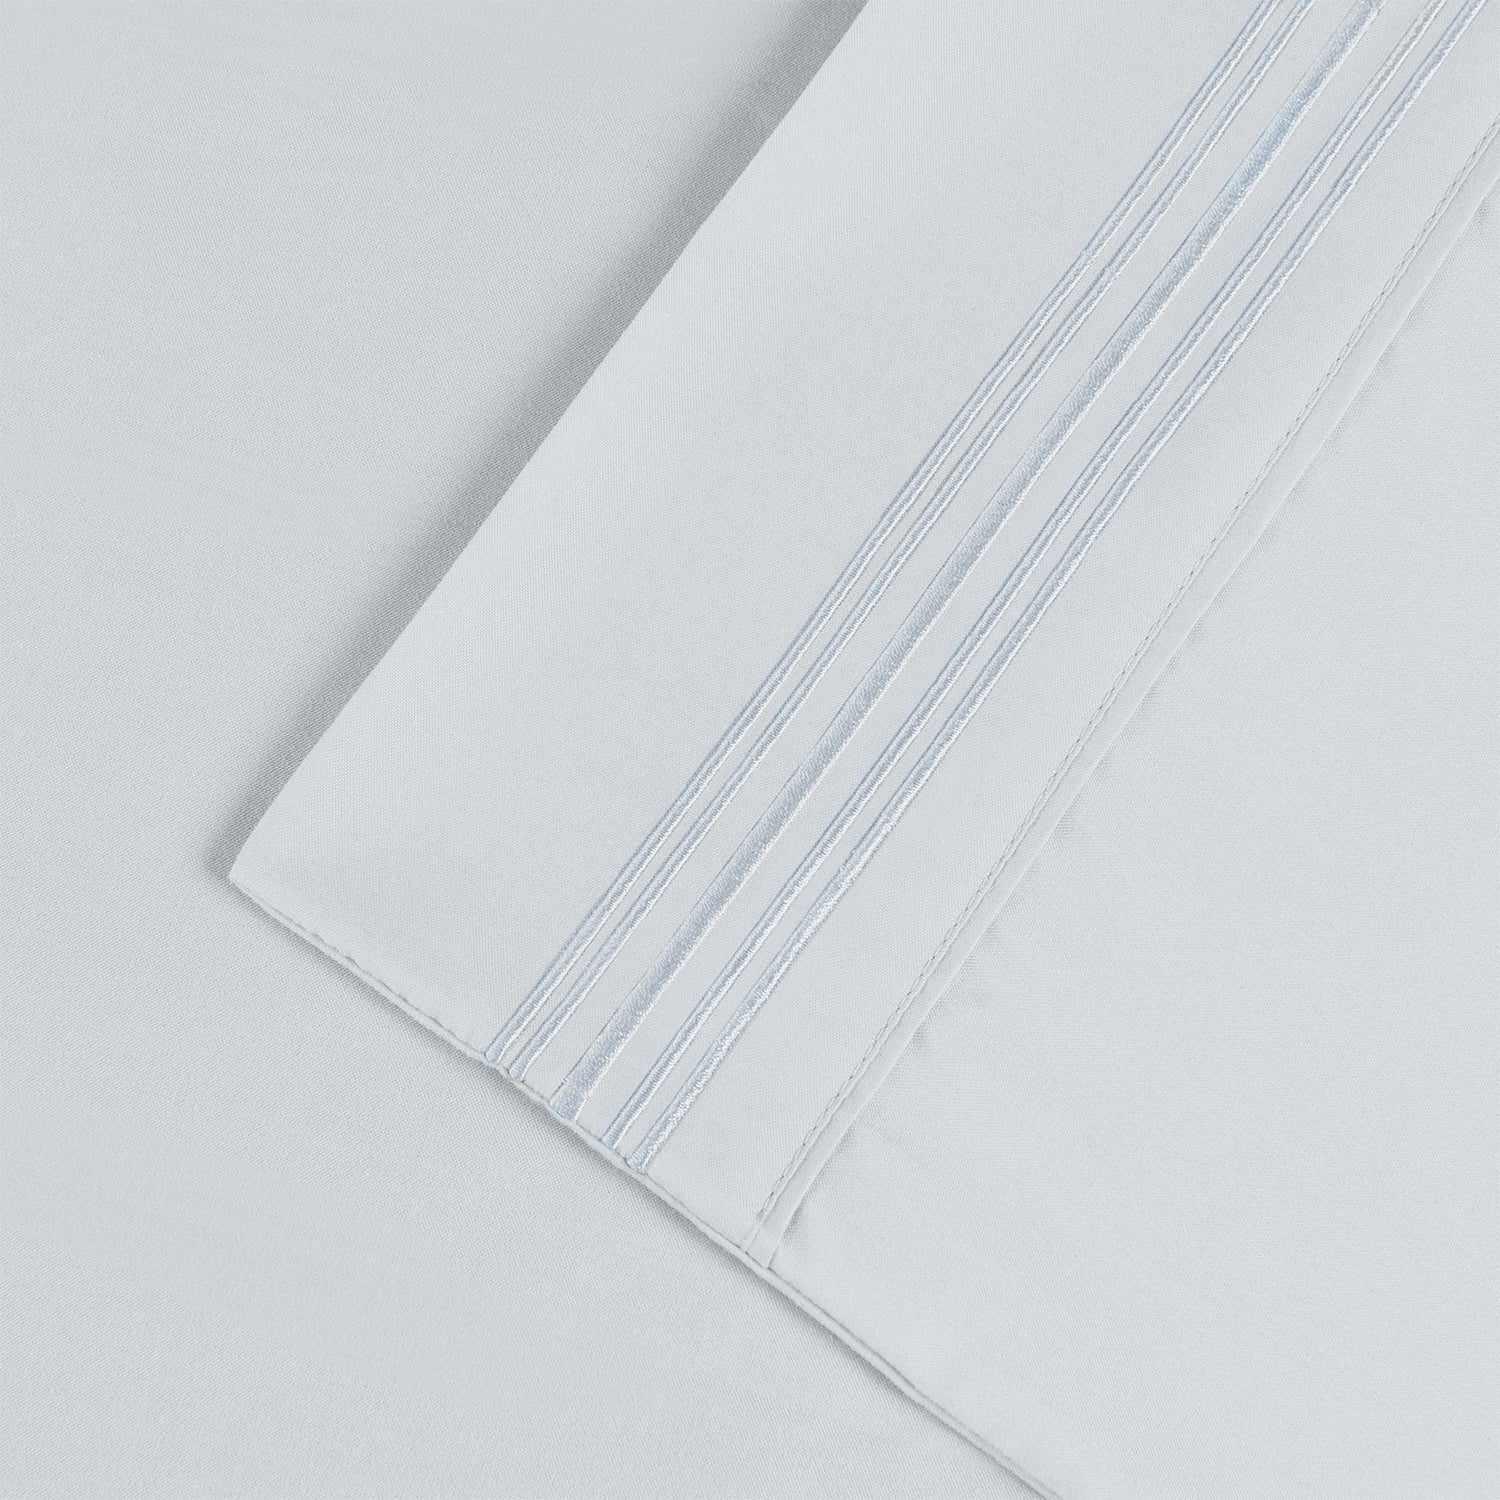  Superior 5 Embroidered Lines Wrinkle Resistant Microfiber Deep Pocket Sheet Set - White